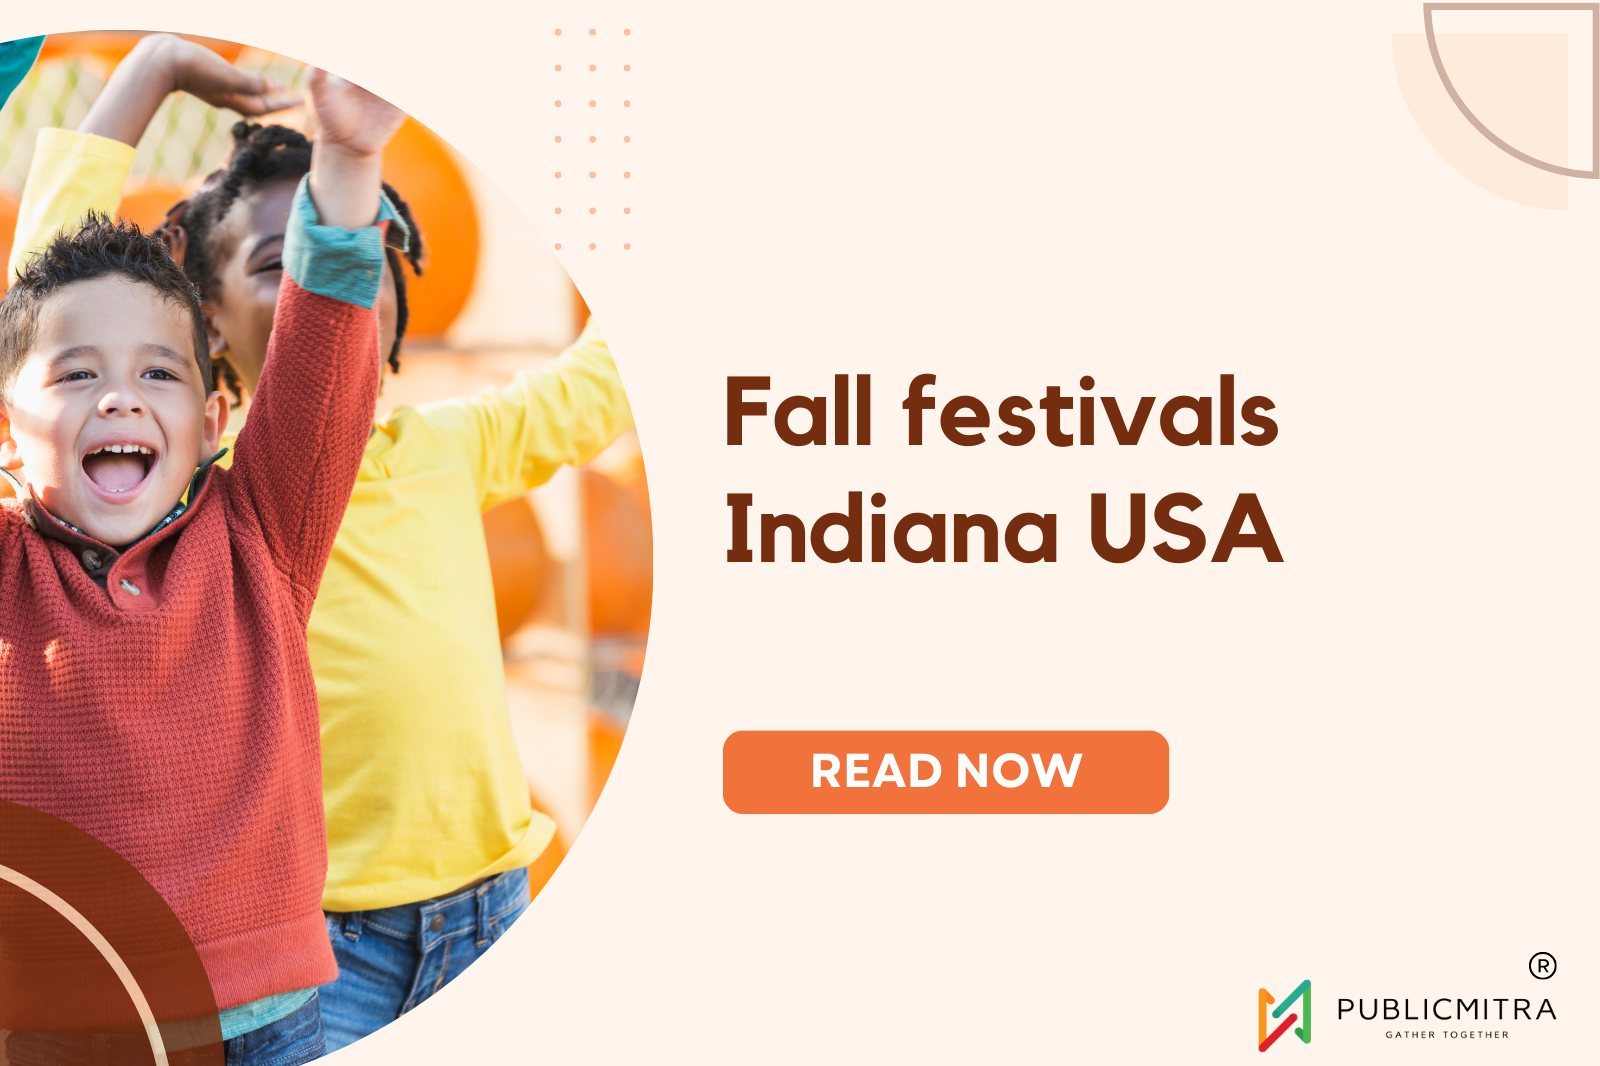 indiana-fall-festival